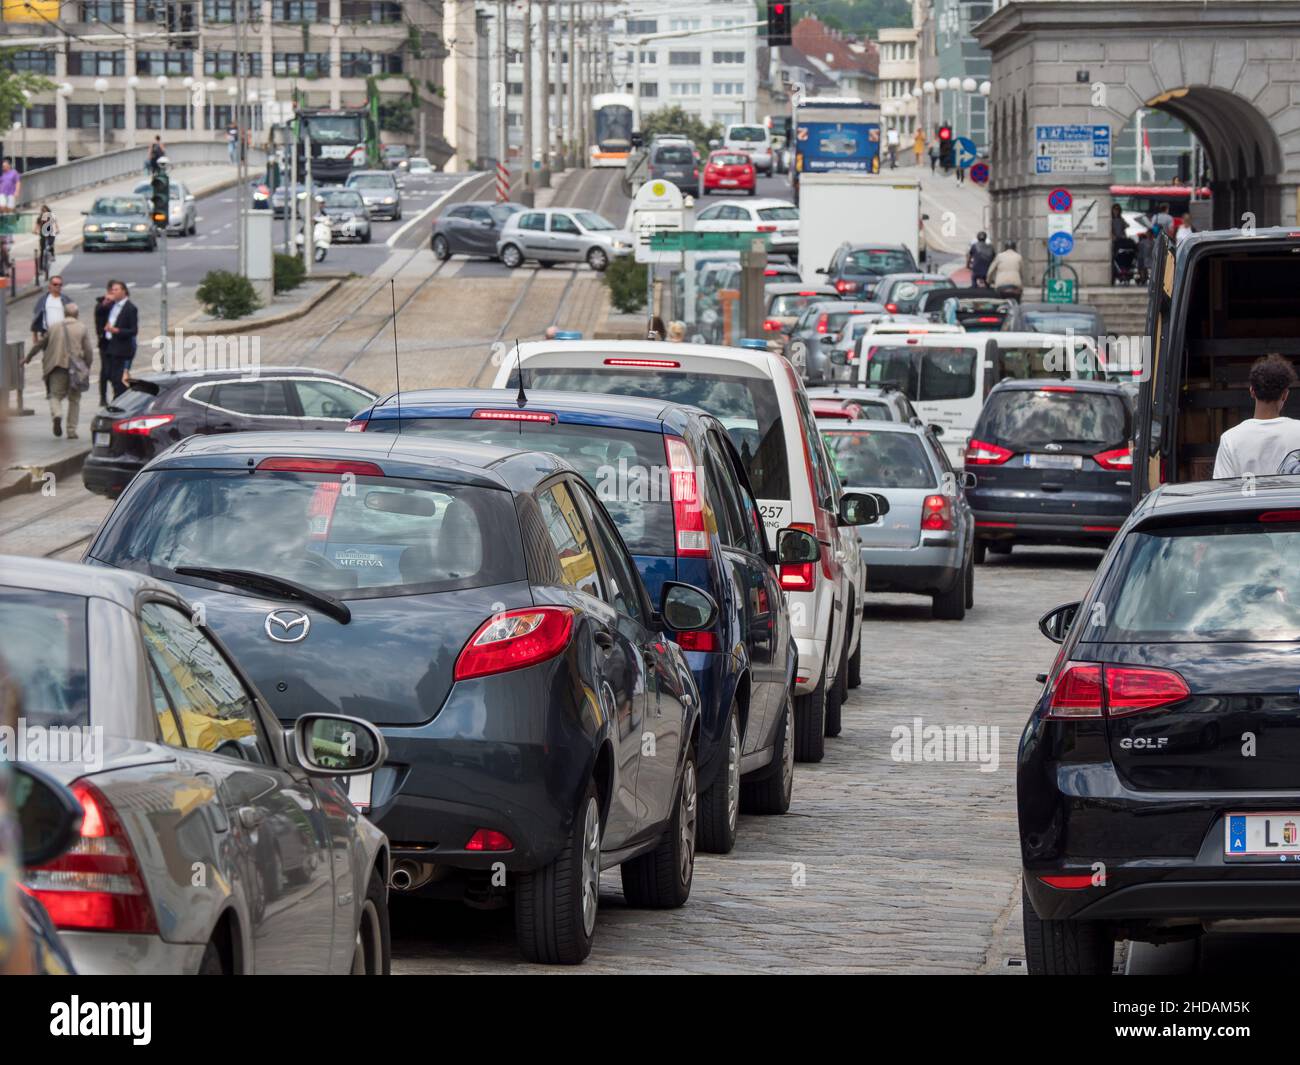 Am Hauptplatz in Linz staut sich der Verkehr zur Rushhour. Stock Photo